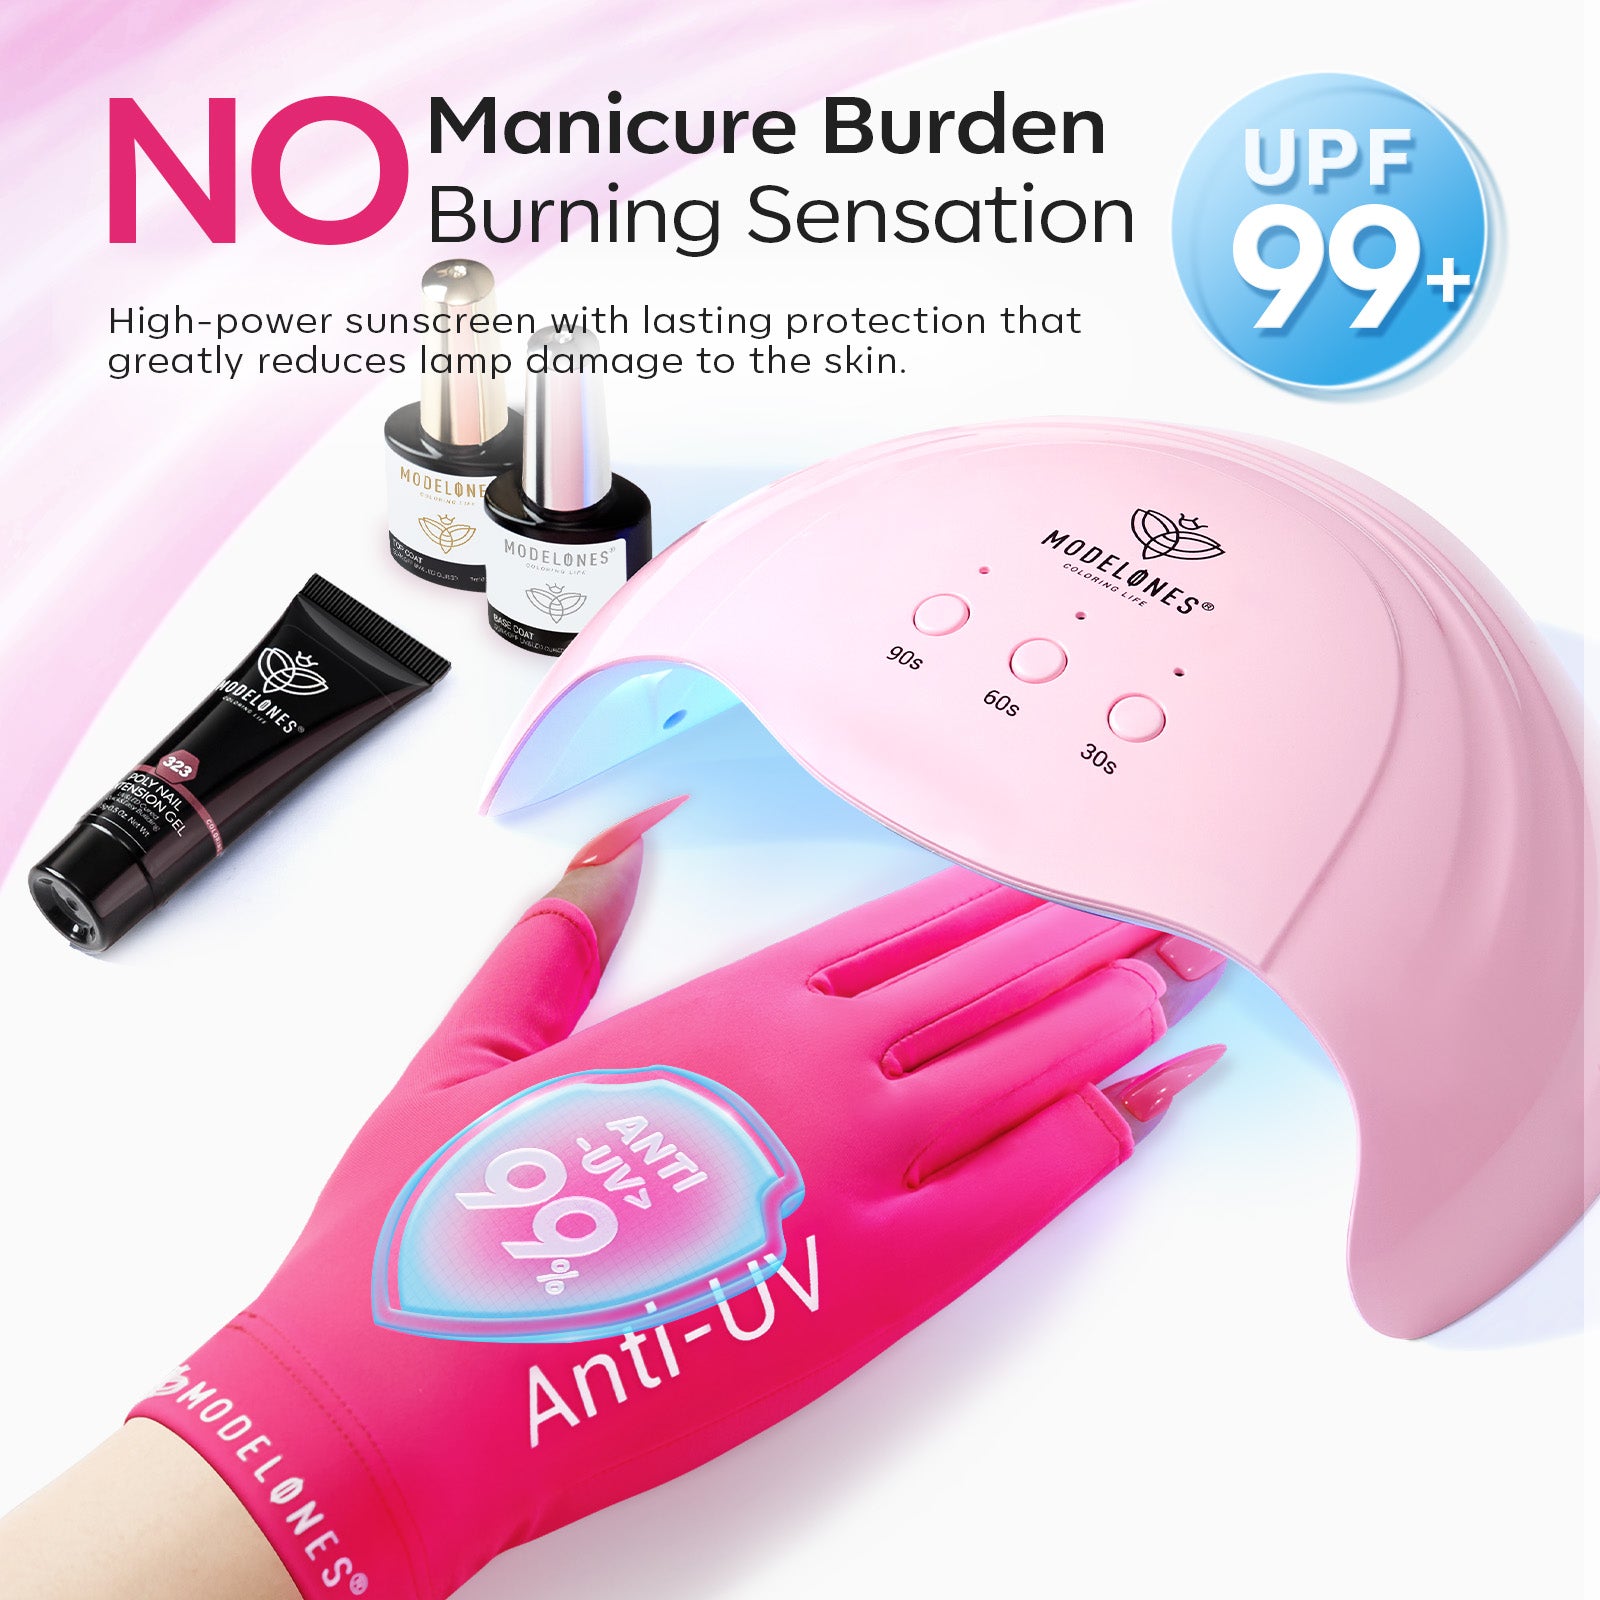 Barbi Anti-UV light Glove For Nails  Salon Professional UPF 99+